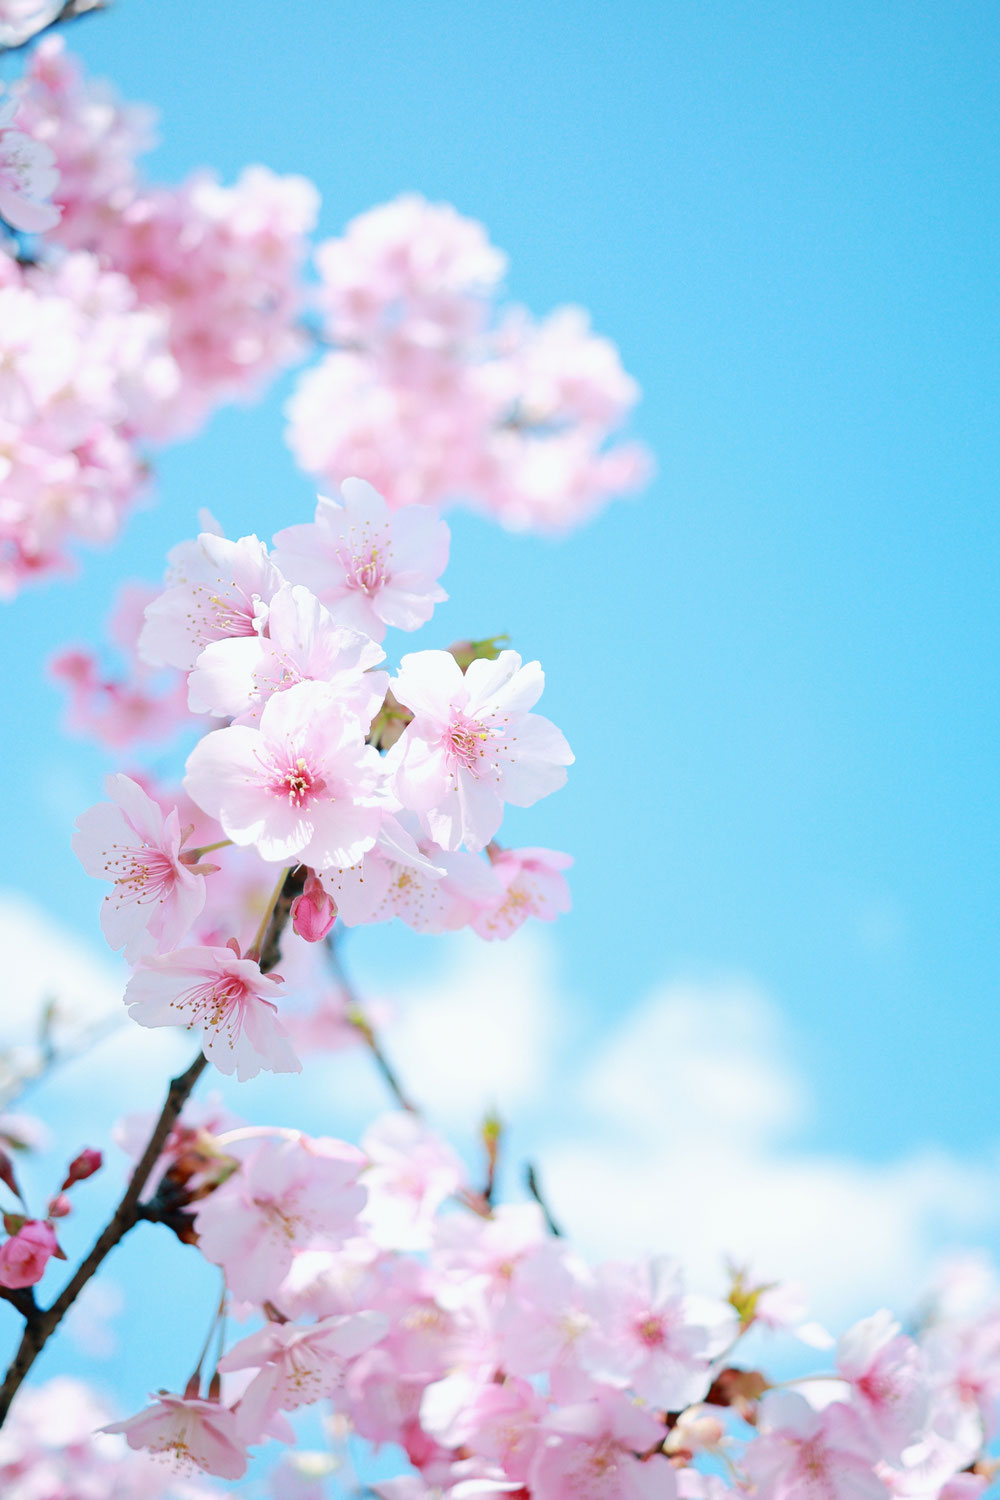 近隣イベント情報「桜に染まるまち、佐倉2022」3月19日から